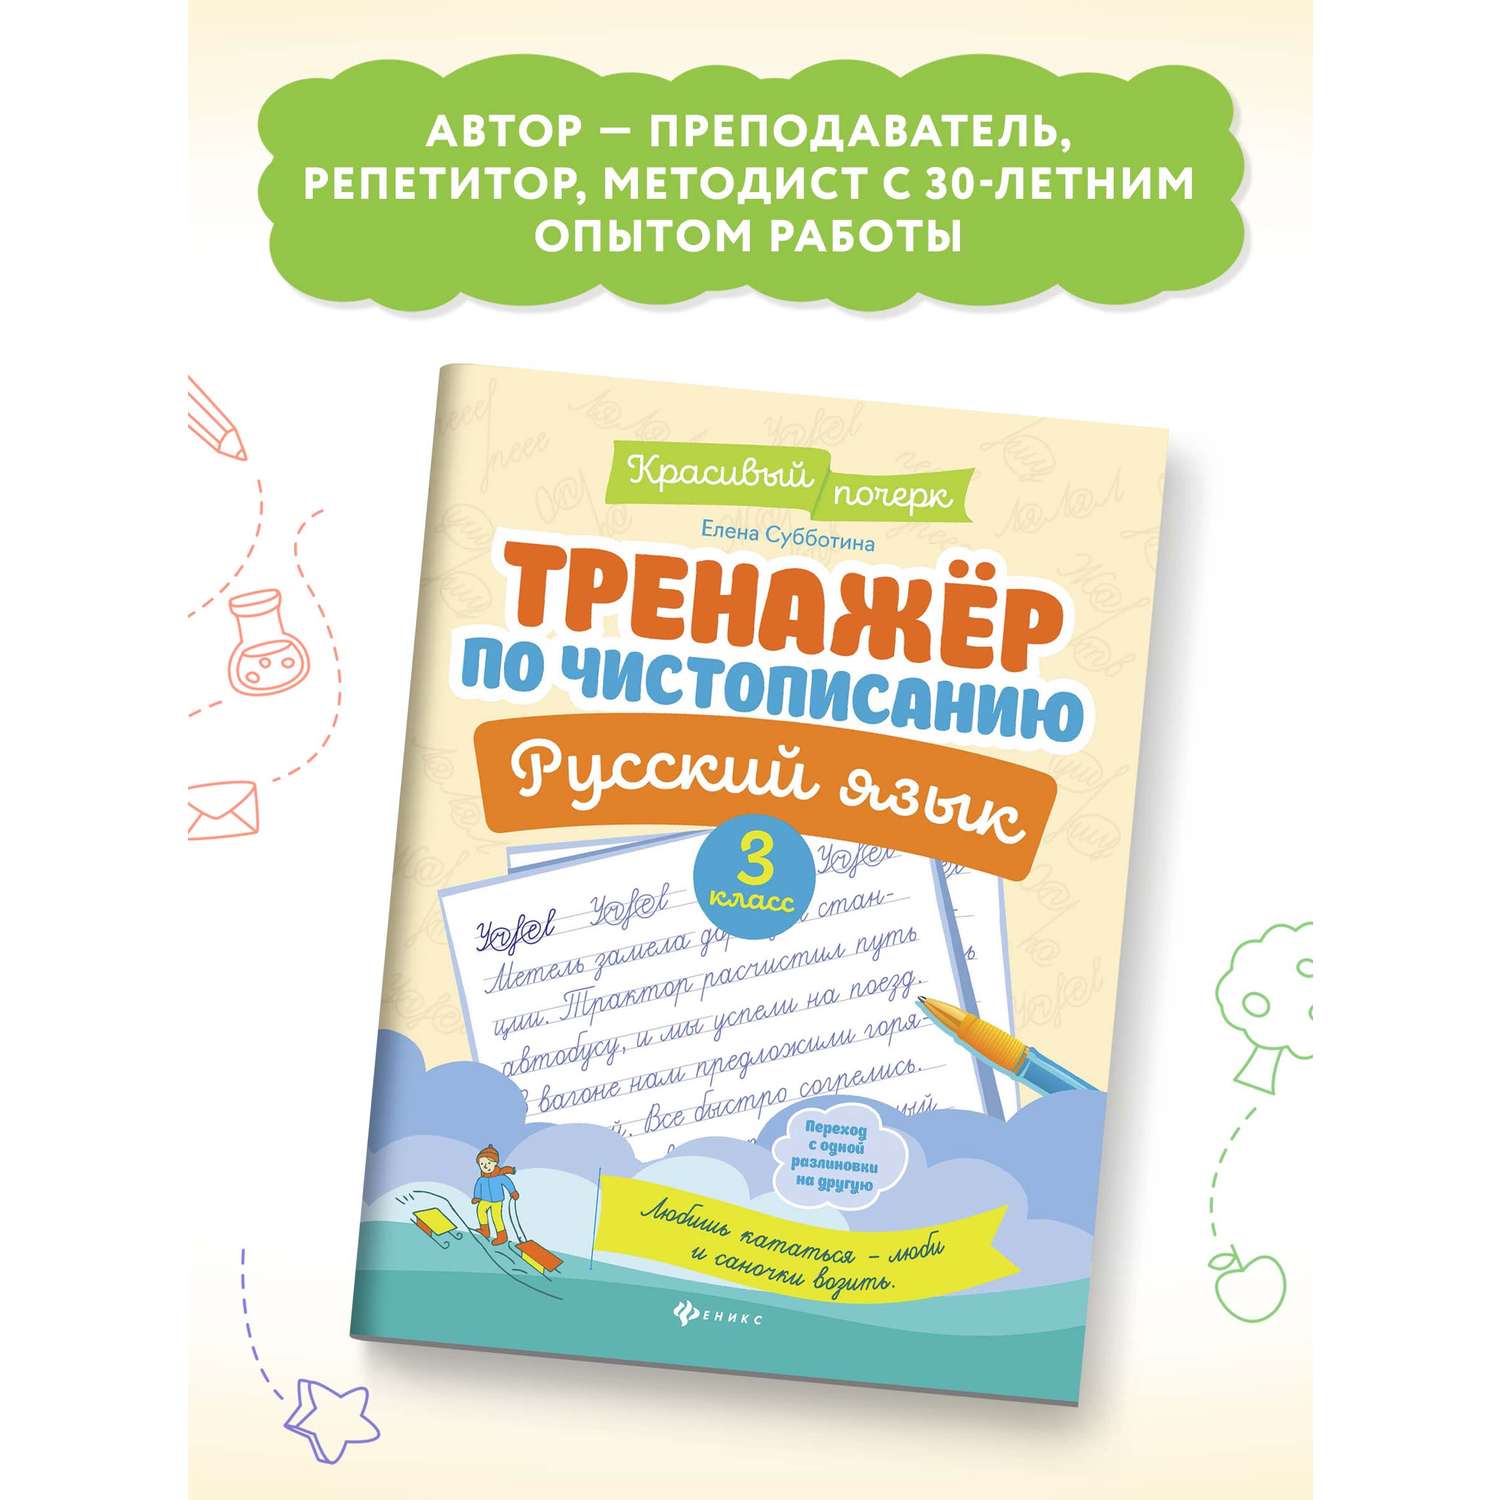 Книга Феникс Тренажер по чистописанию Русский язык 3 класс - фото 3